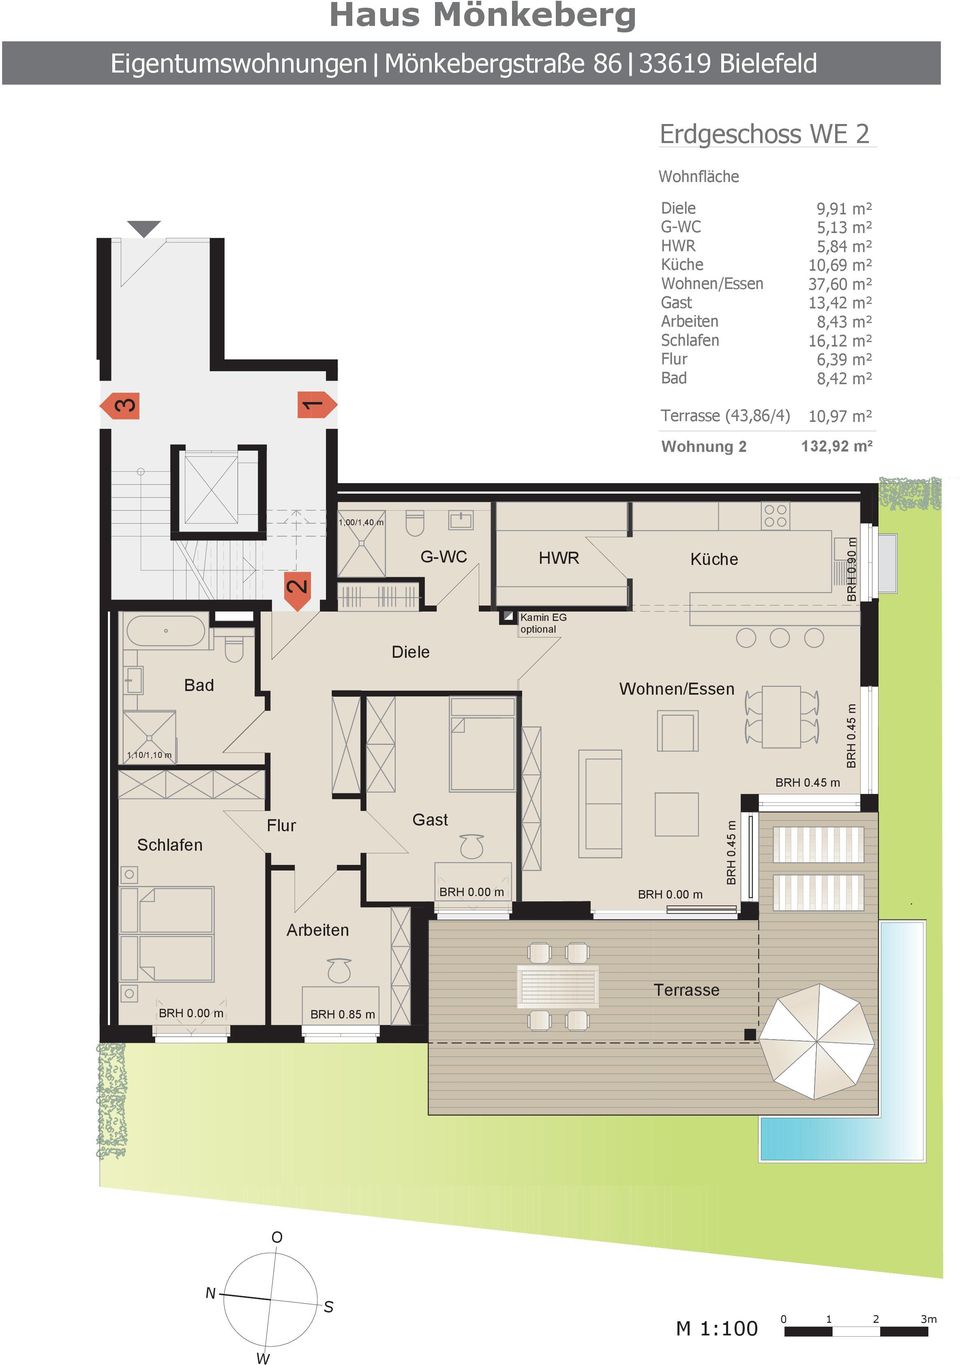 Wohnung 2 132,92 m² 1,00/1,40 m 2 G-WC HWR Küche BRH 0.